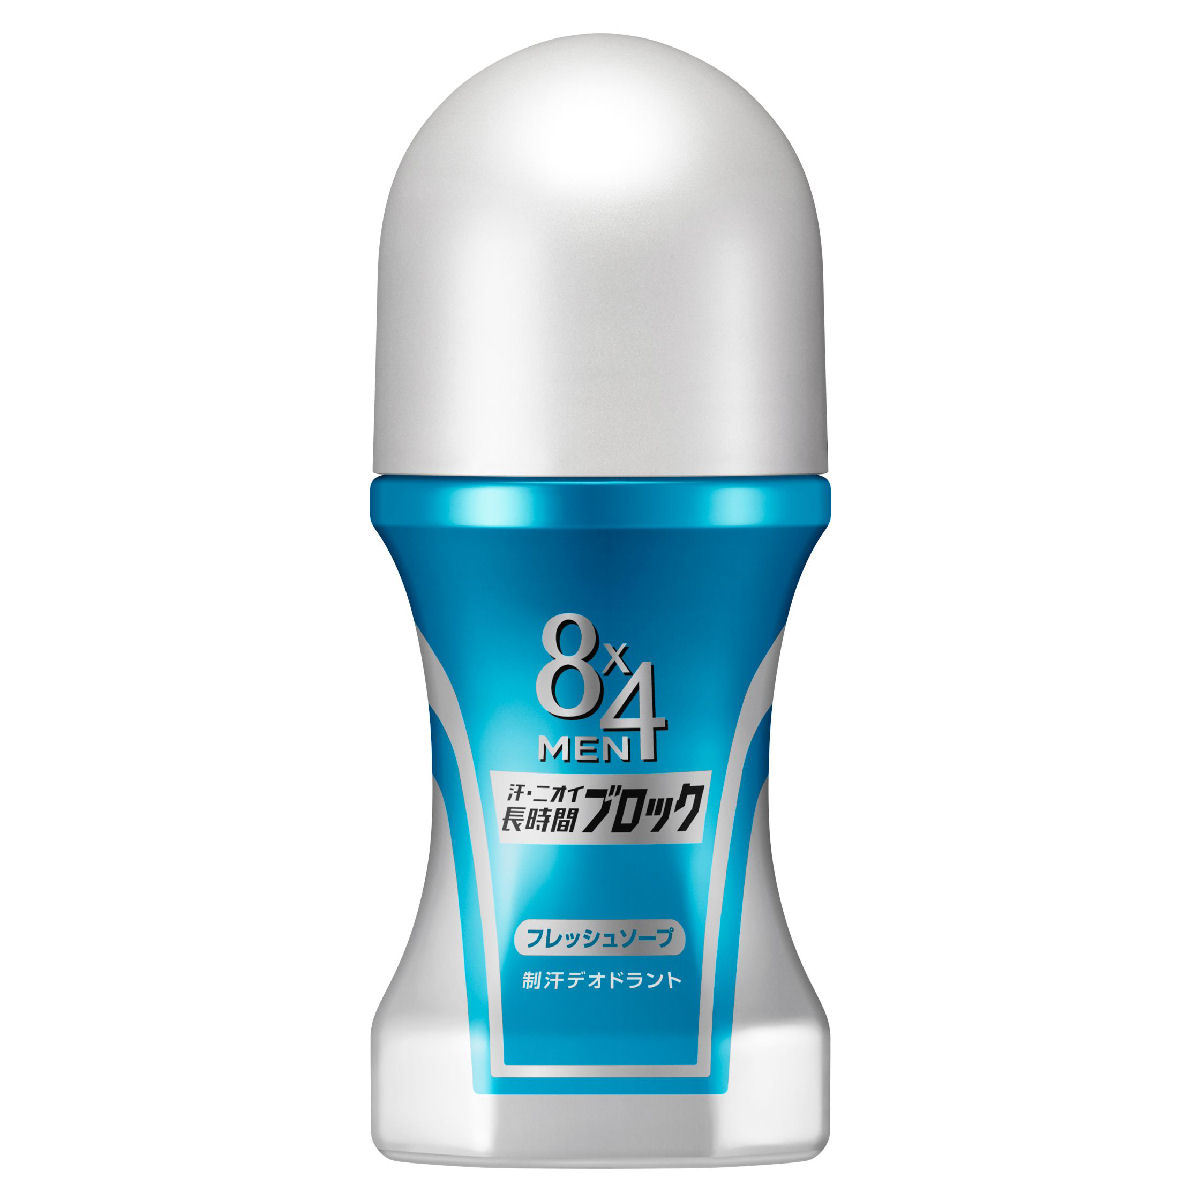 Kao 8×4 MEN ロールオン フレッシュソープの香り 60ml 花王 ×3個 8×4 MEN 制汗、デオドラント剤の商品画像